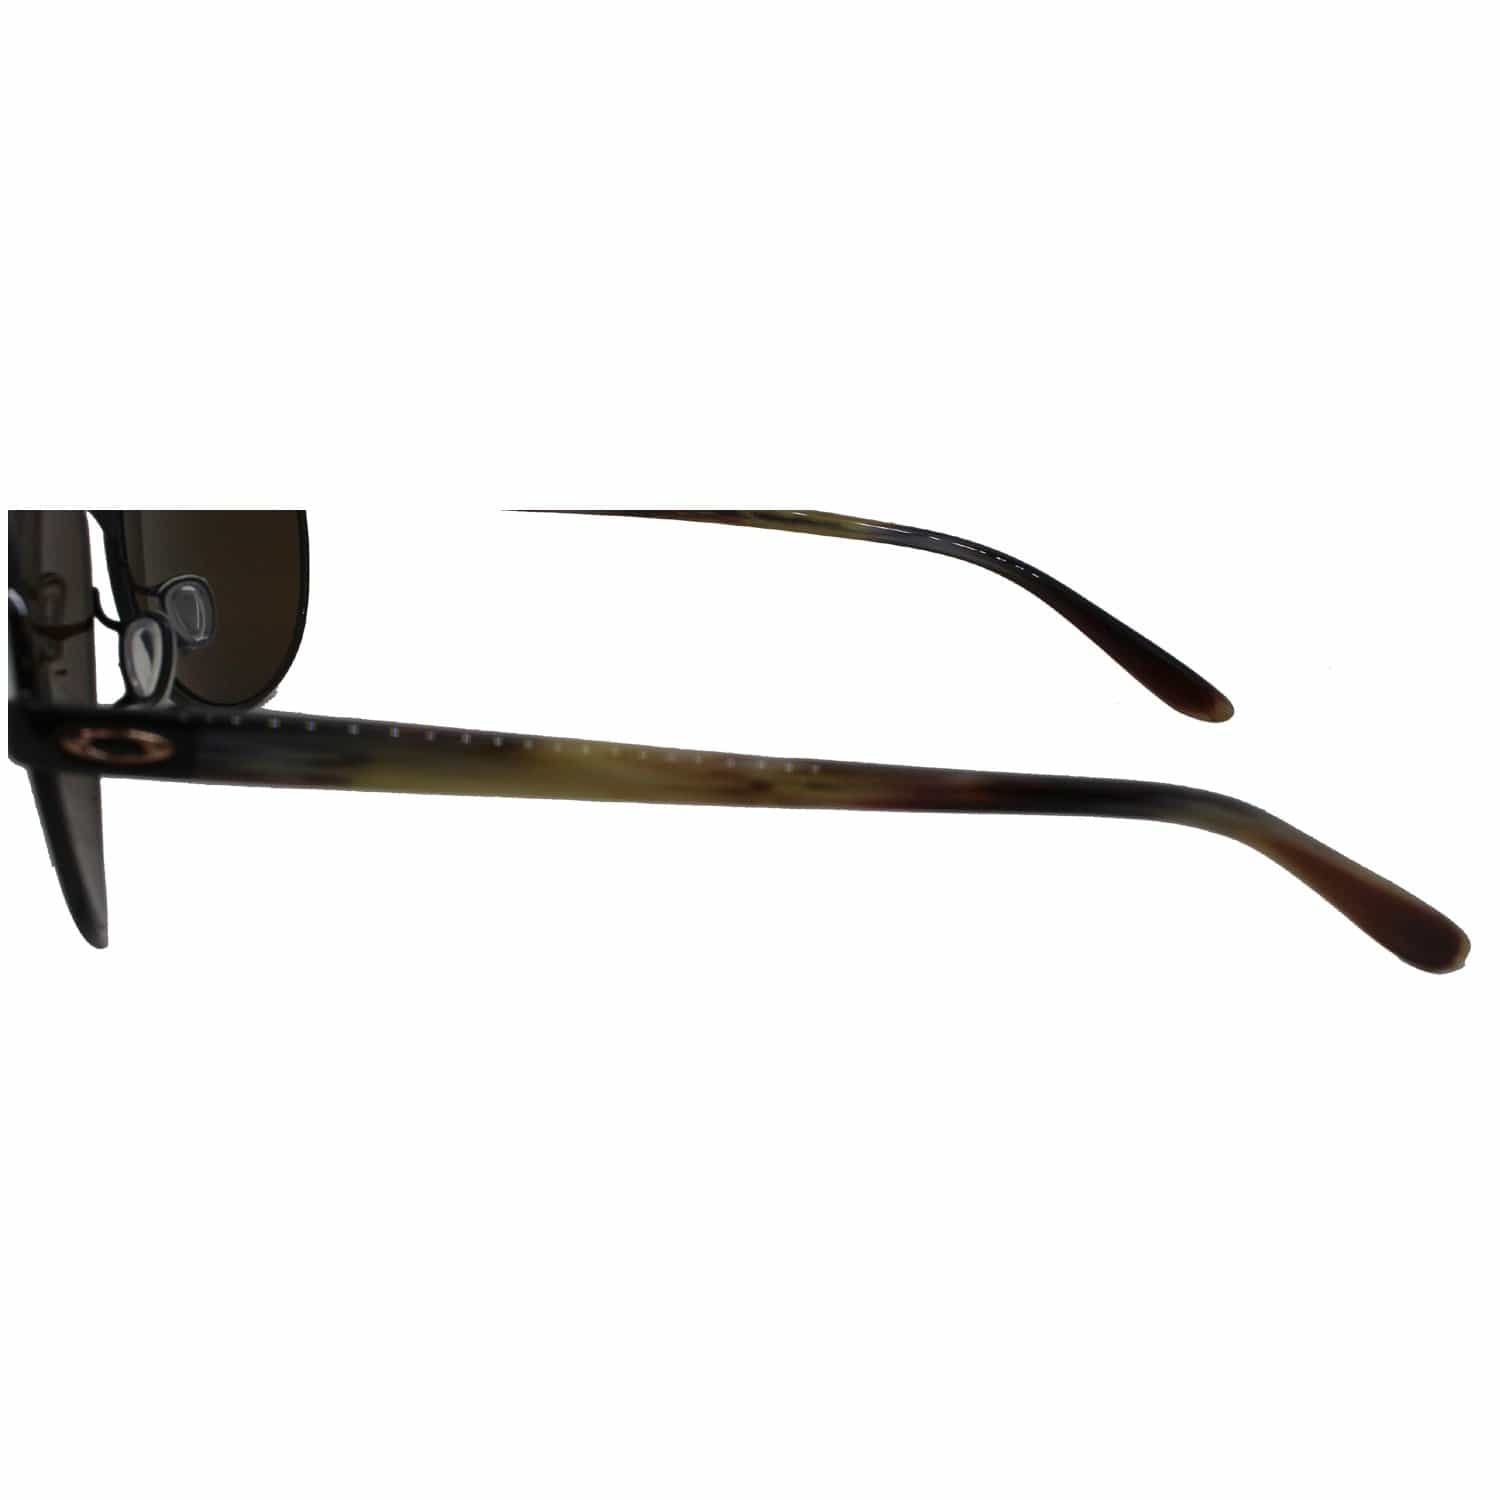 Oakley Tie Breaker Sunglasses